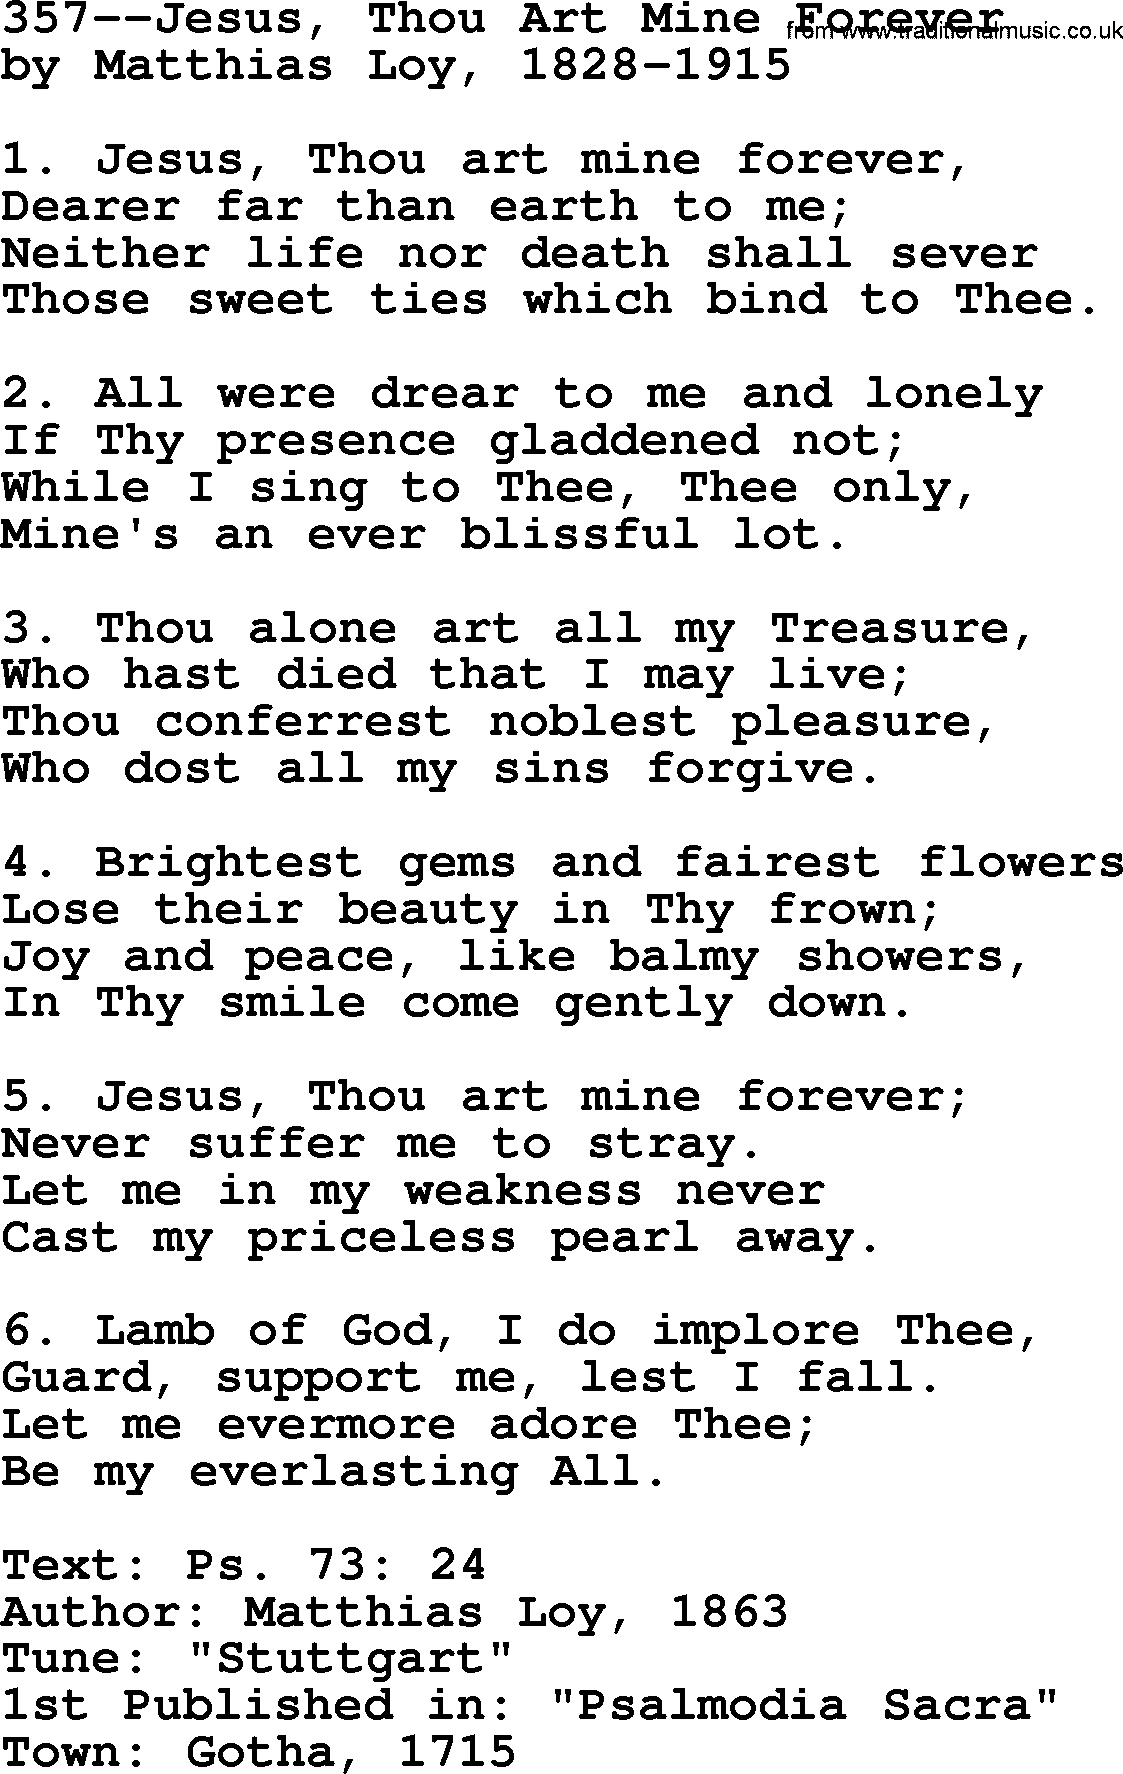 Lutheran Hymn: 357--Jesus, Thou Art Mine Forever.txt lyrics with PDF